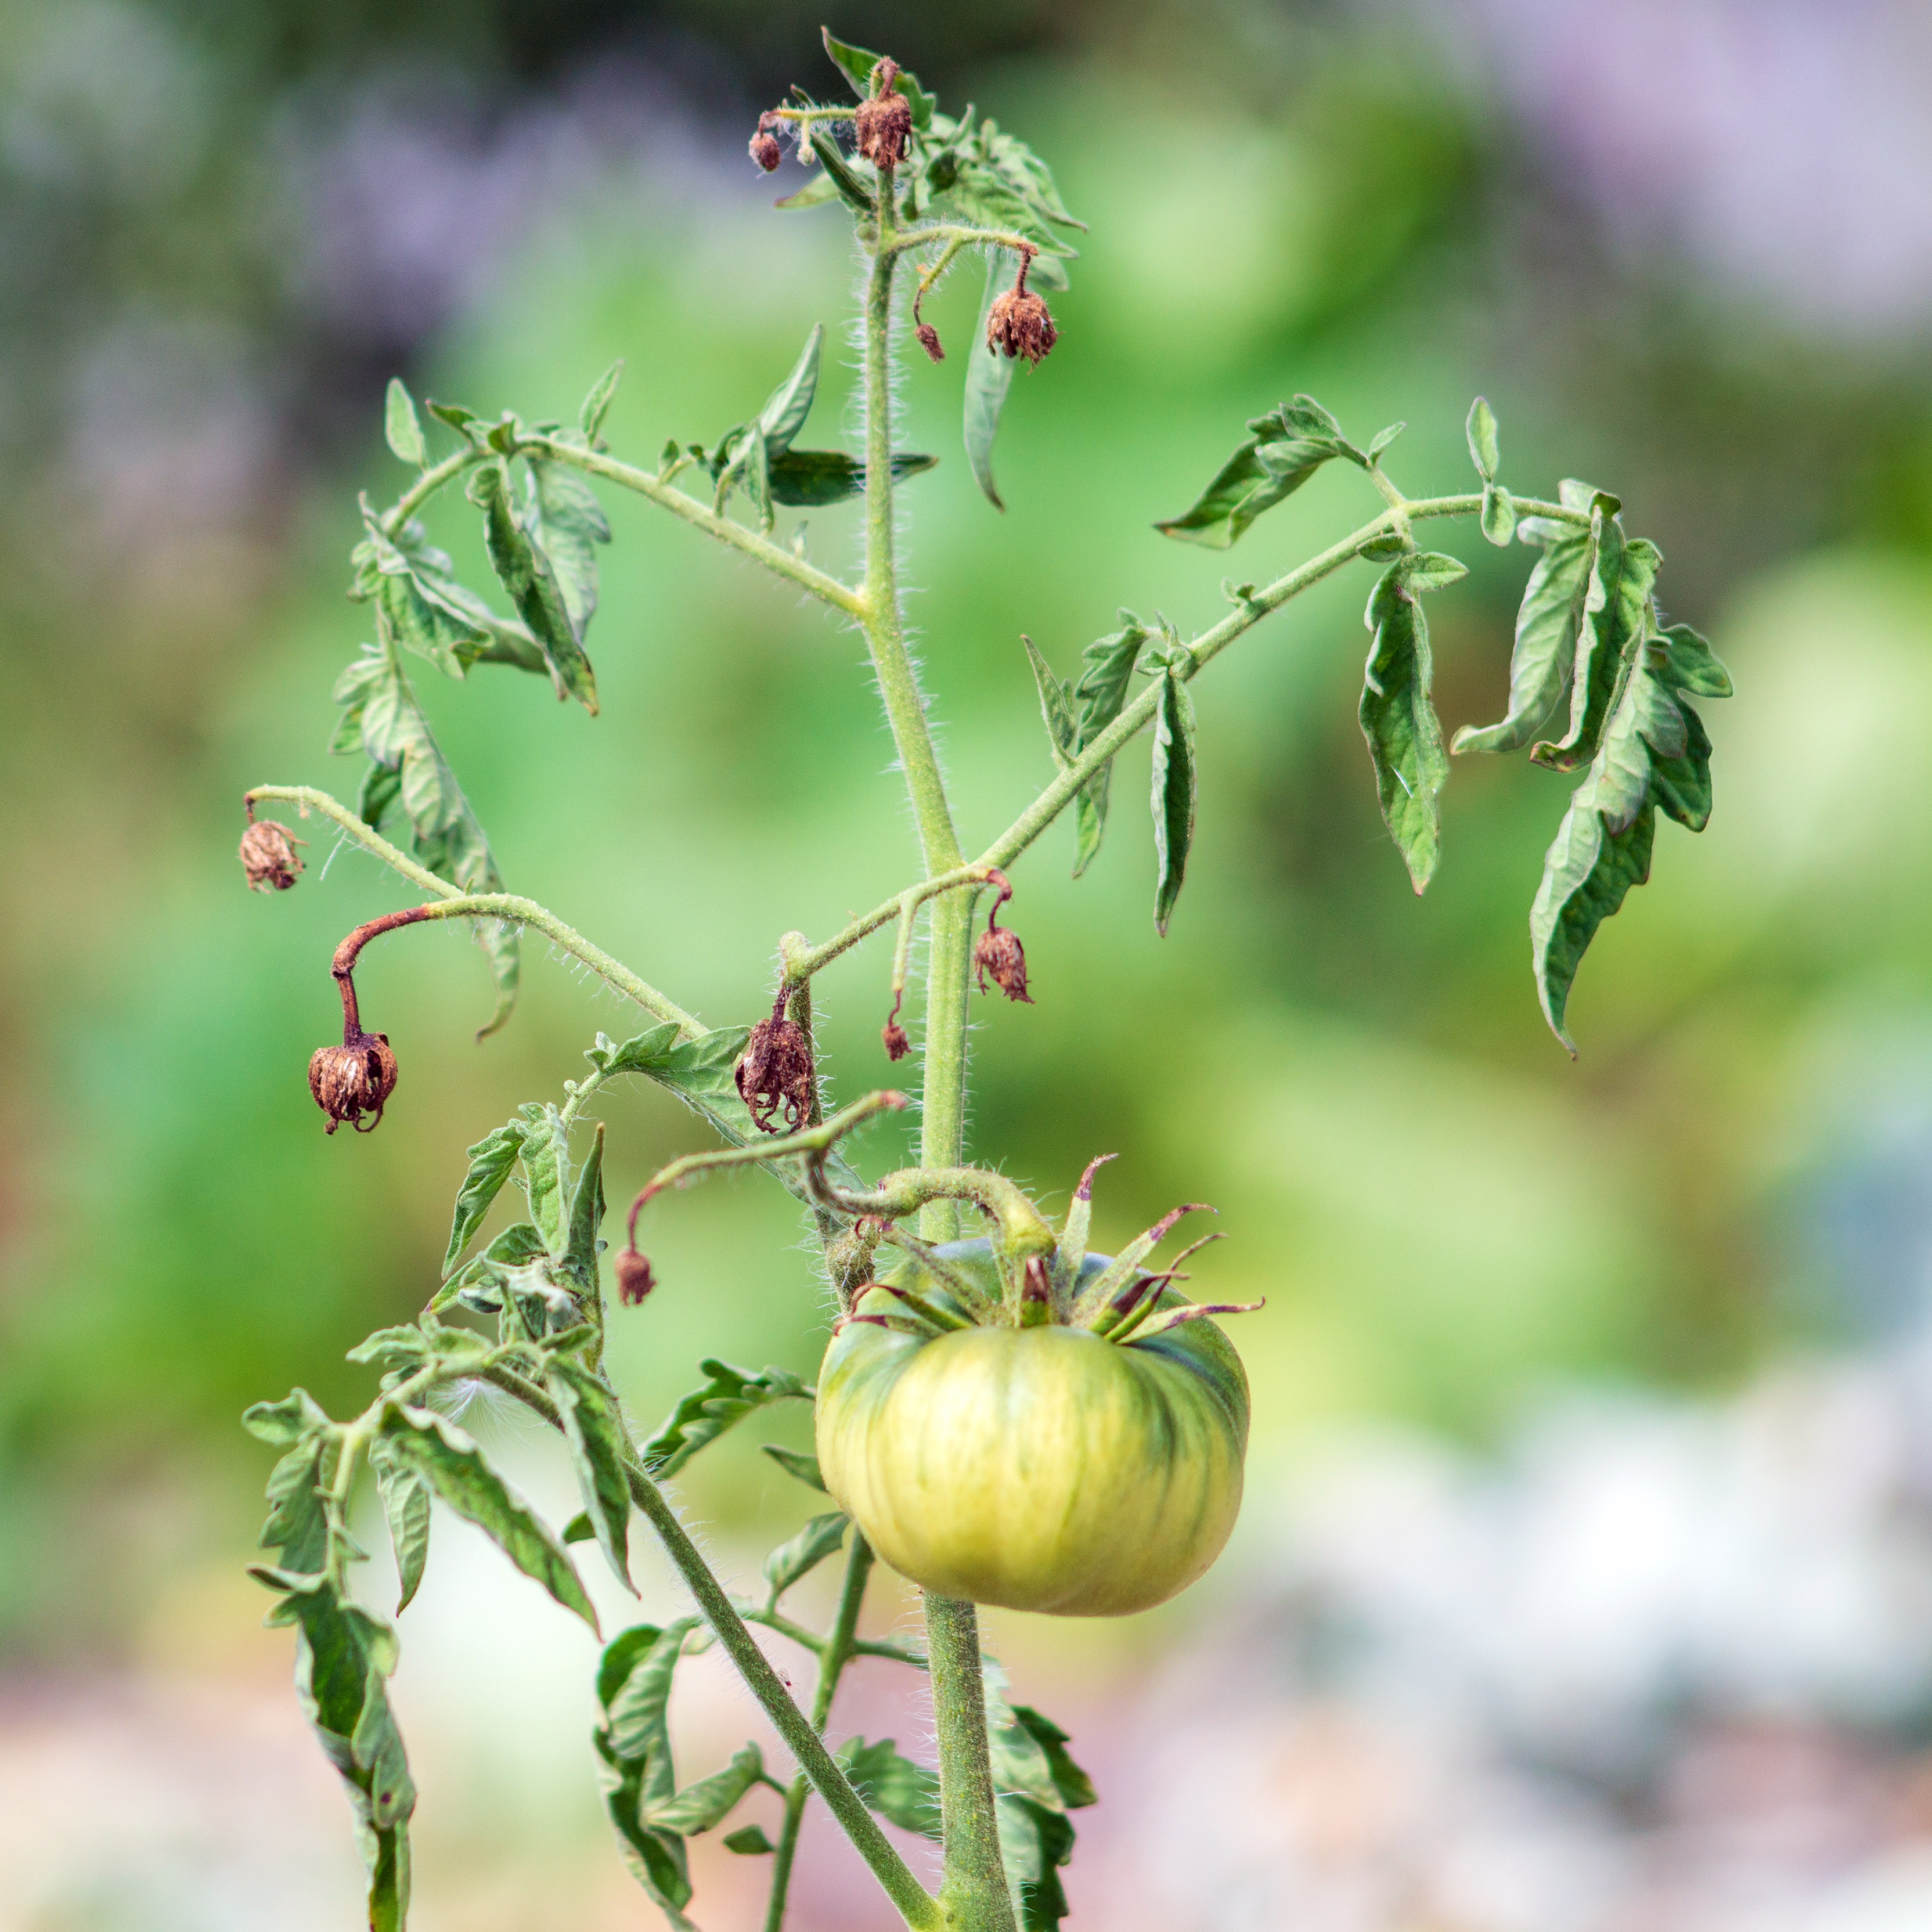 afbeelding van tomaten met kroeskoppen - Aveve